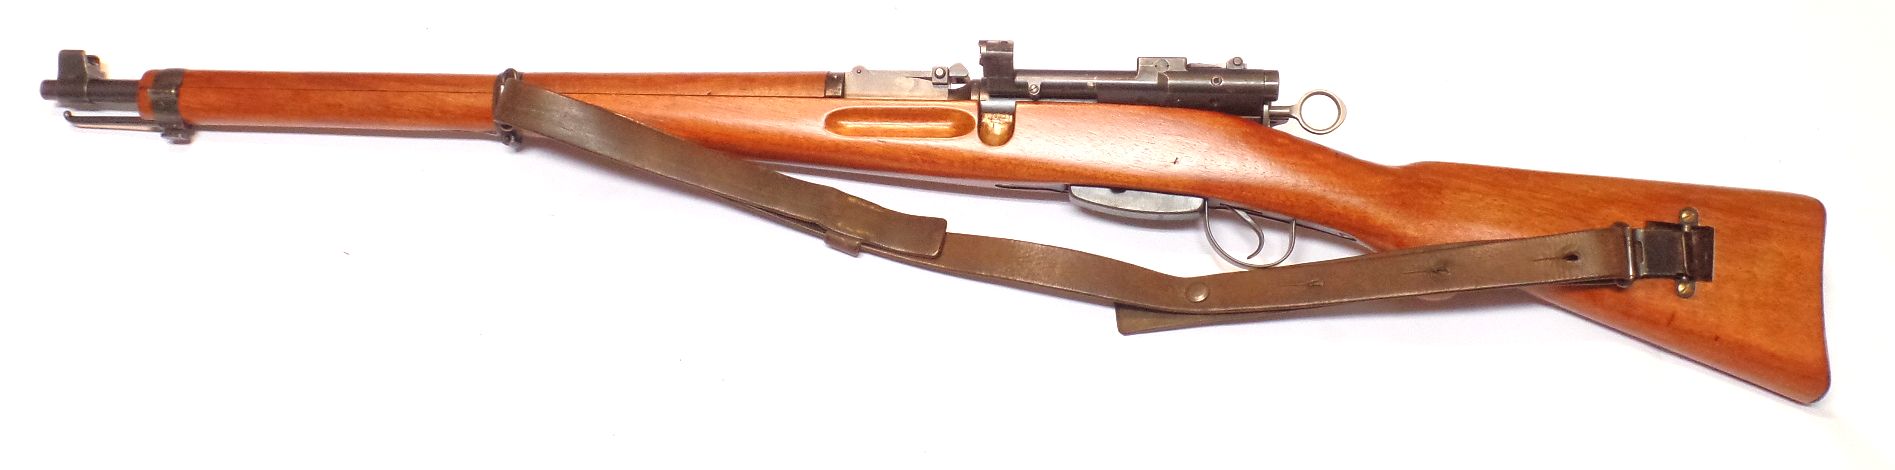 ZFK31-42 calibre 7.5x55 Zielfernrohr Karabiner